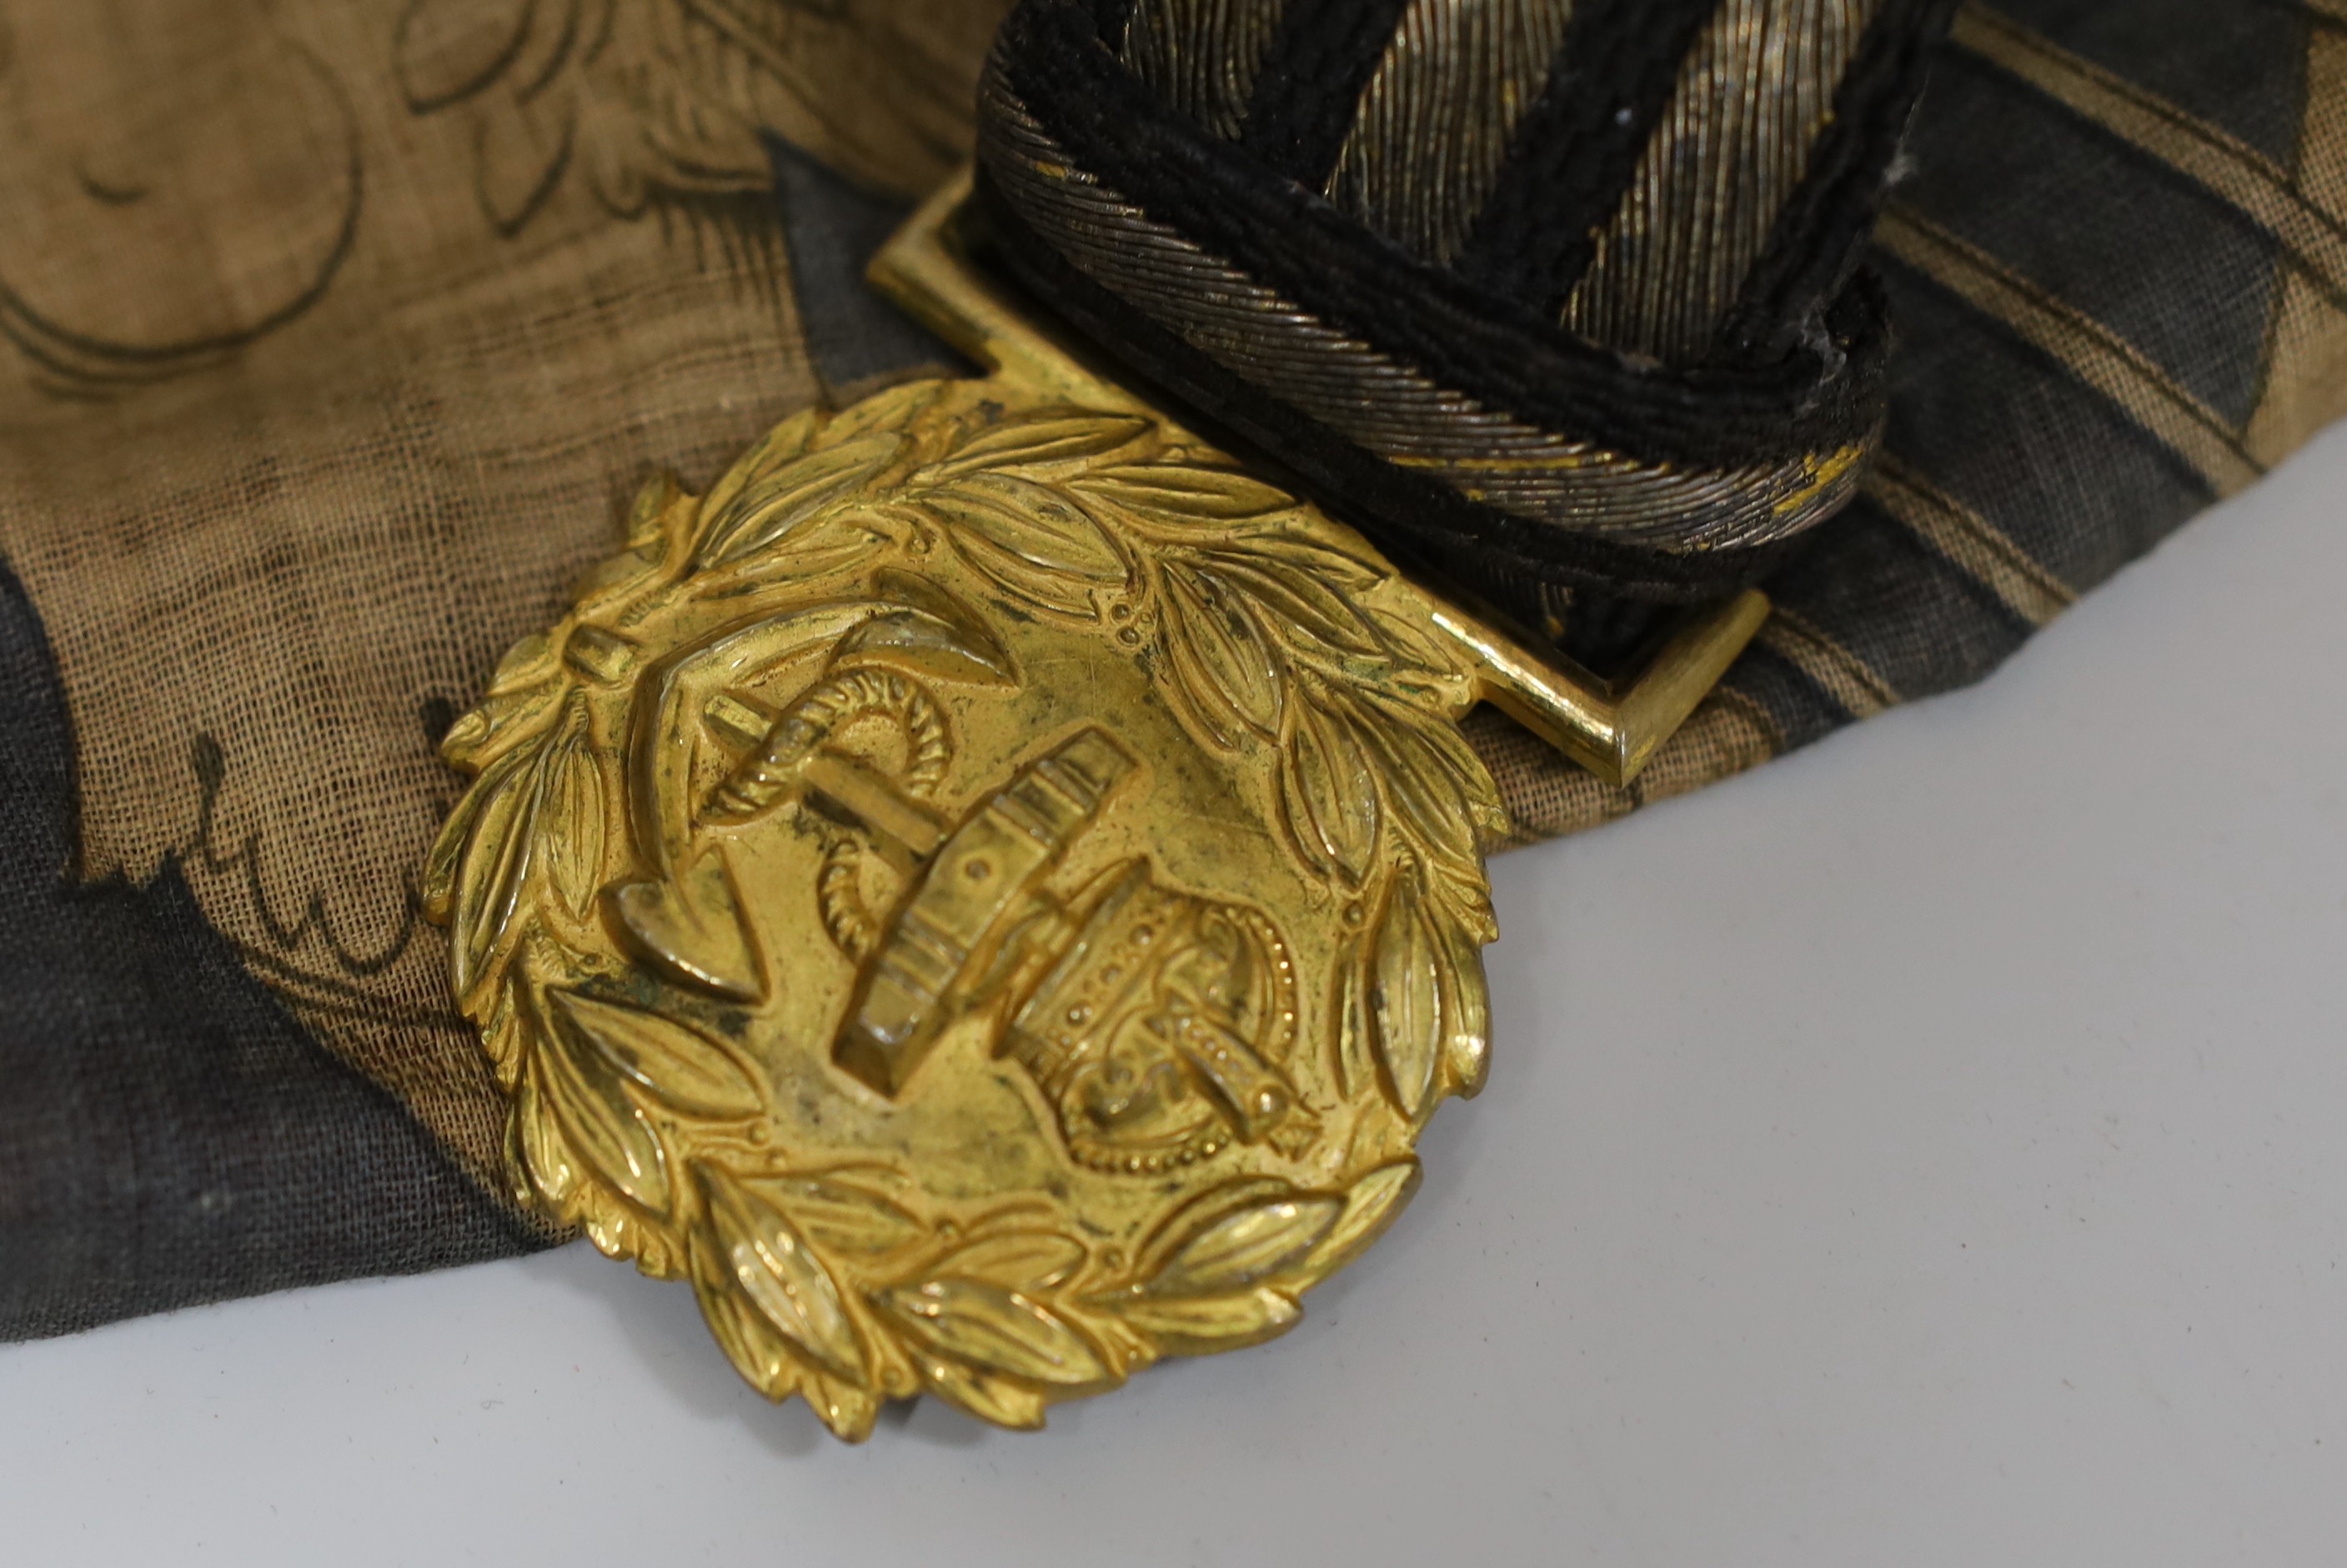 A Royal Naval gilt brass mounted officers belt, an Edwardian Dieu et mon droit belt, a Victorian printed flag and A Victorian Yorkshire Regiment officers brocade sword belt